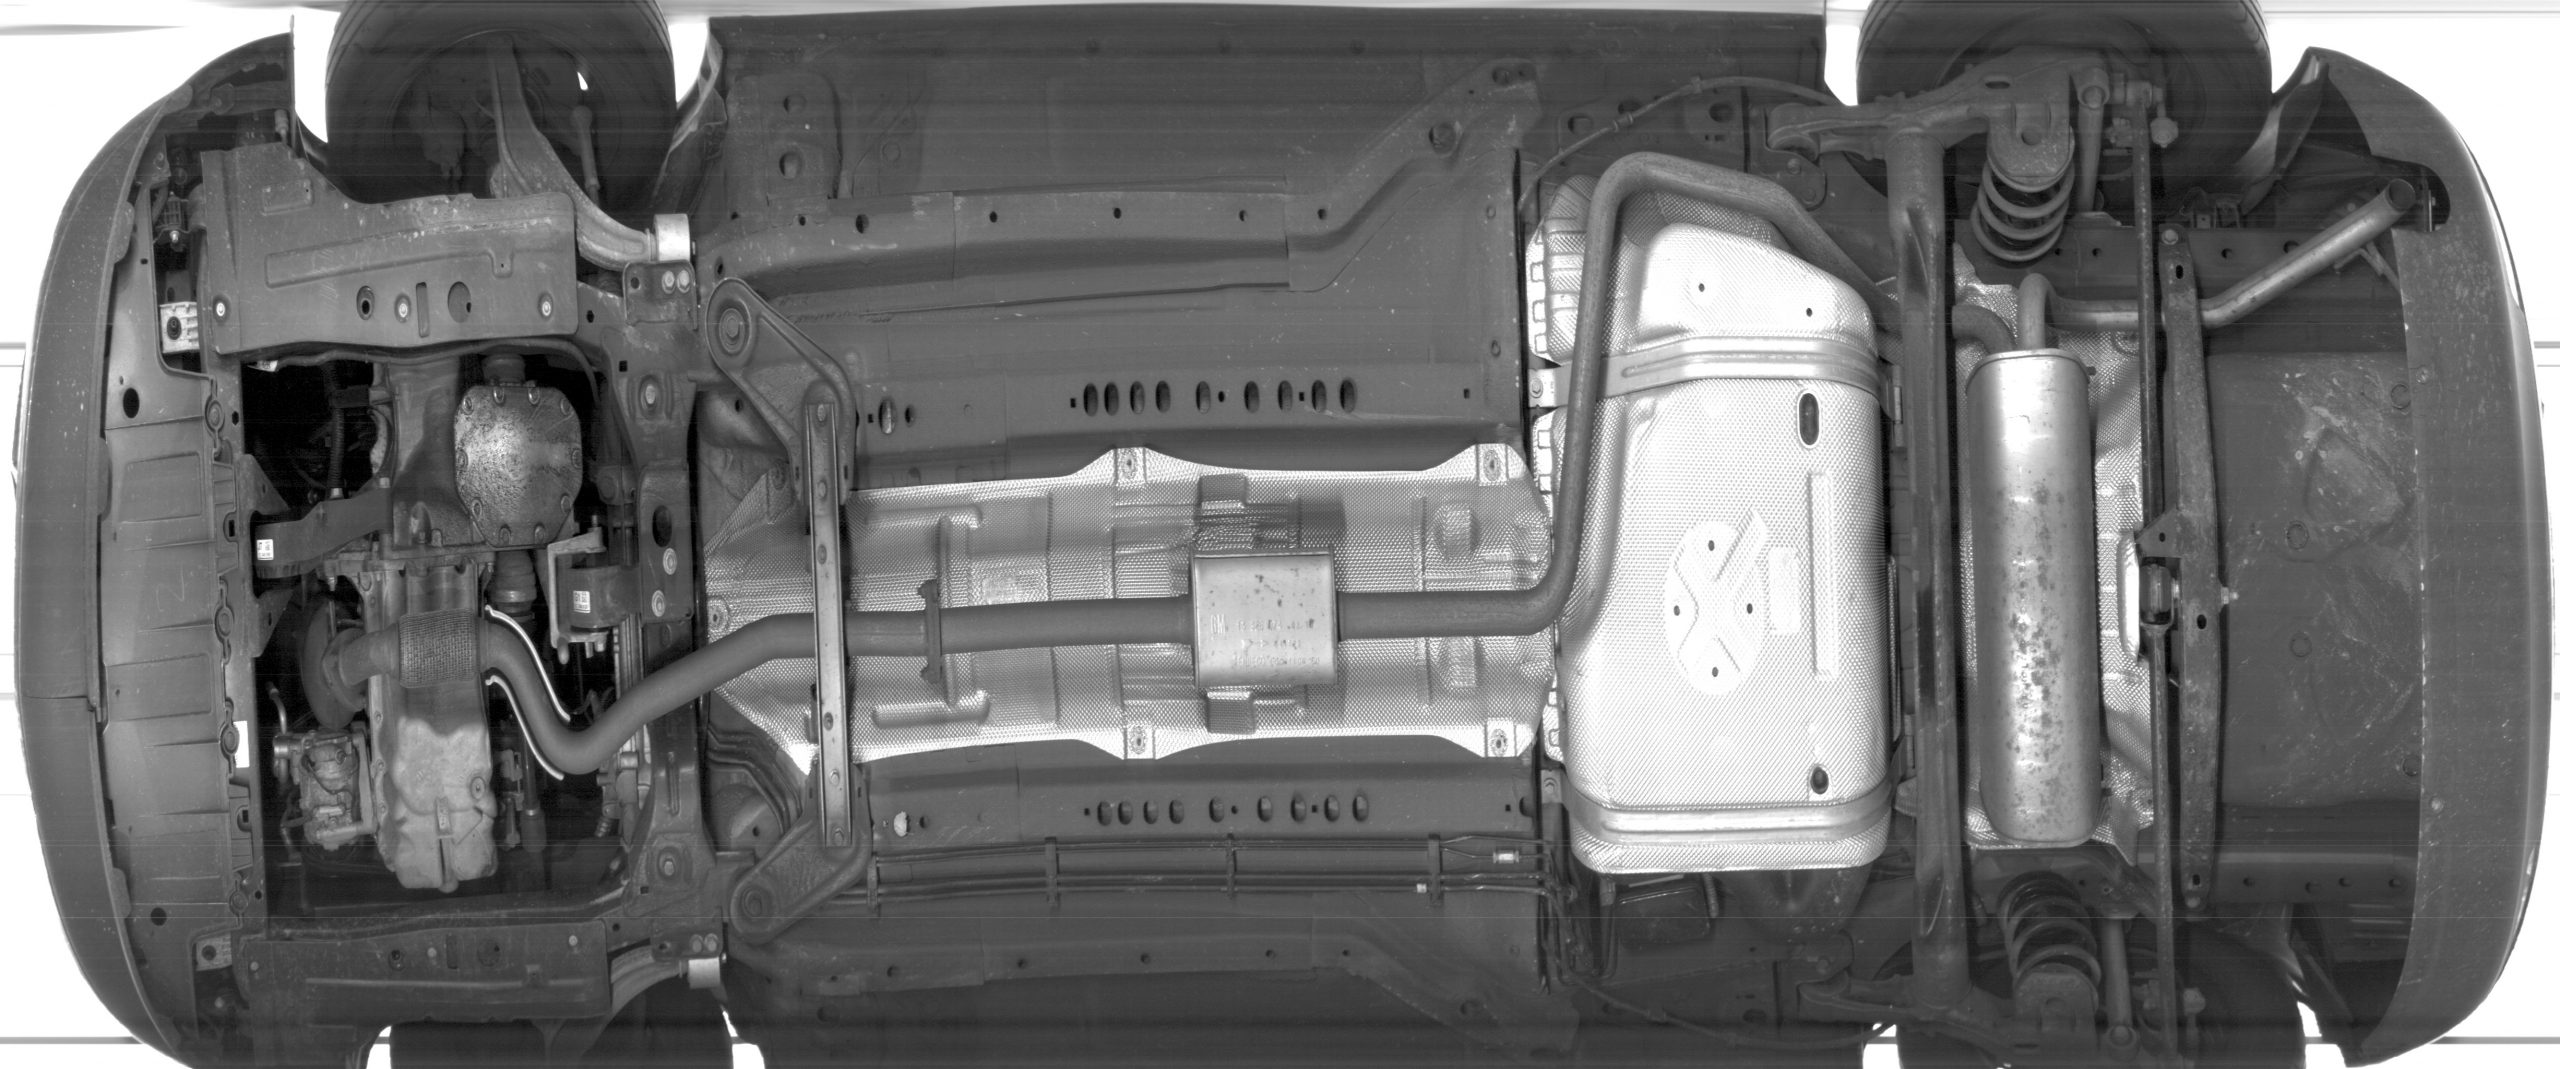 Châssis de véhicule scanné par TREX-UVSS